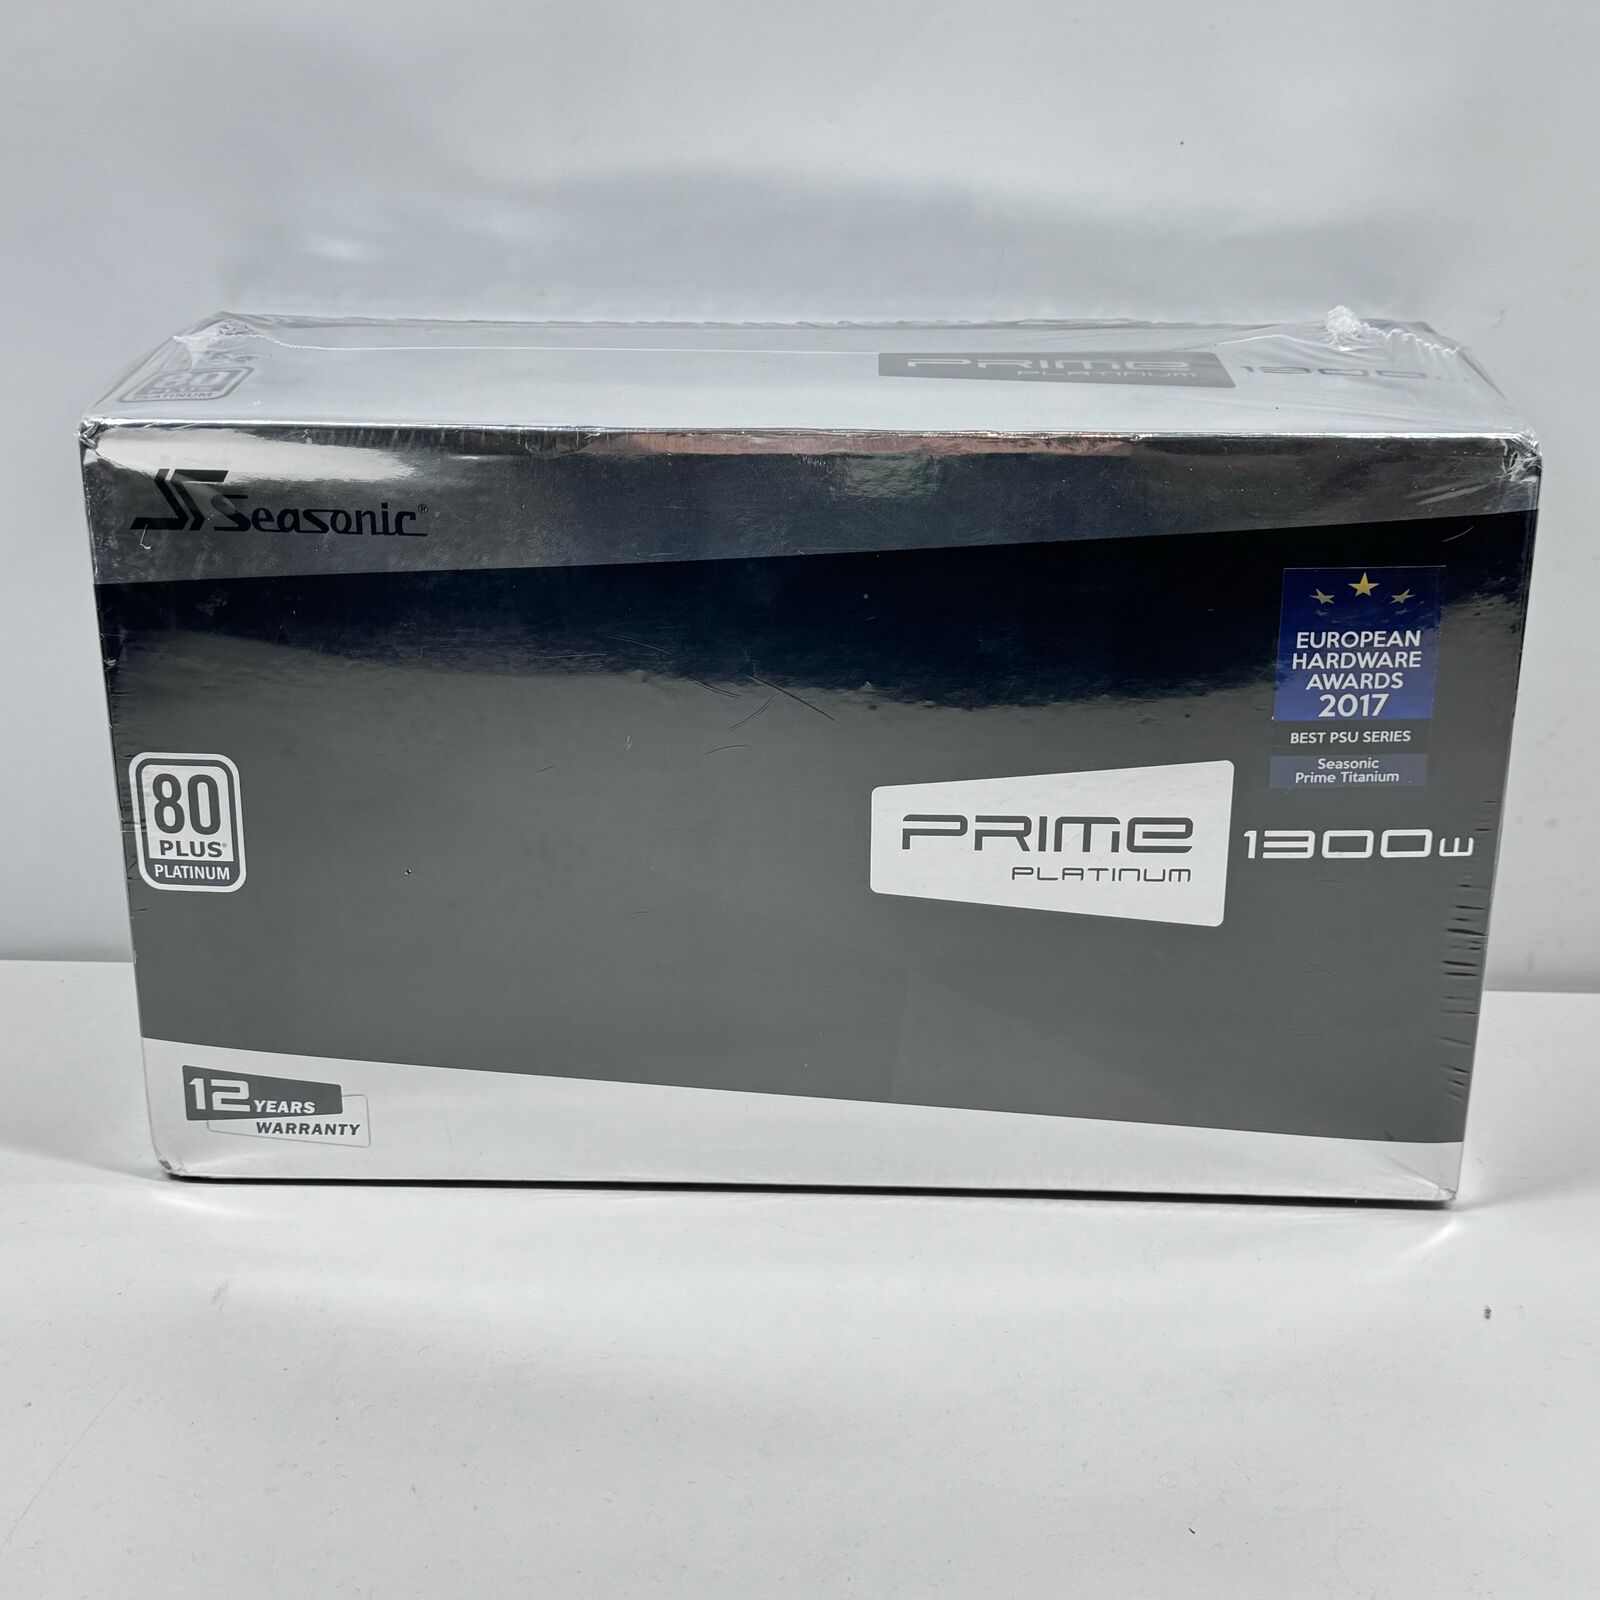 New SeaSonic Prime Platinum SSR-1300PD 80 Plus Platinum 1300W Fully Modular